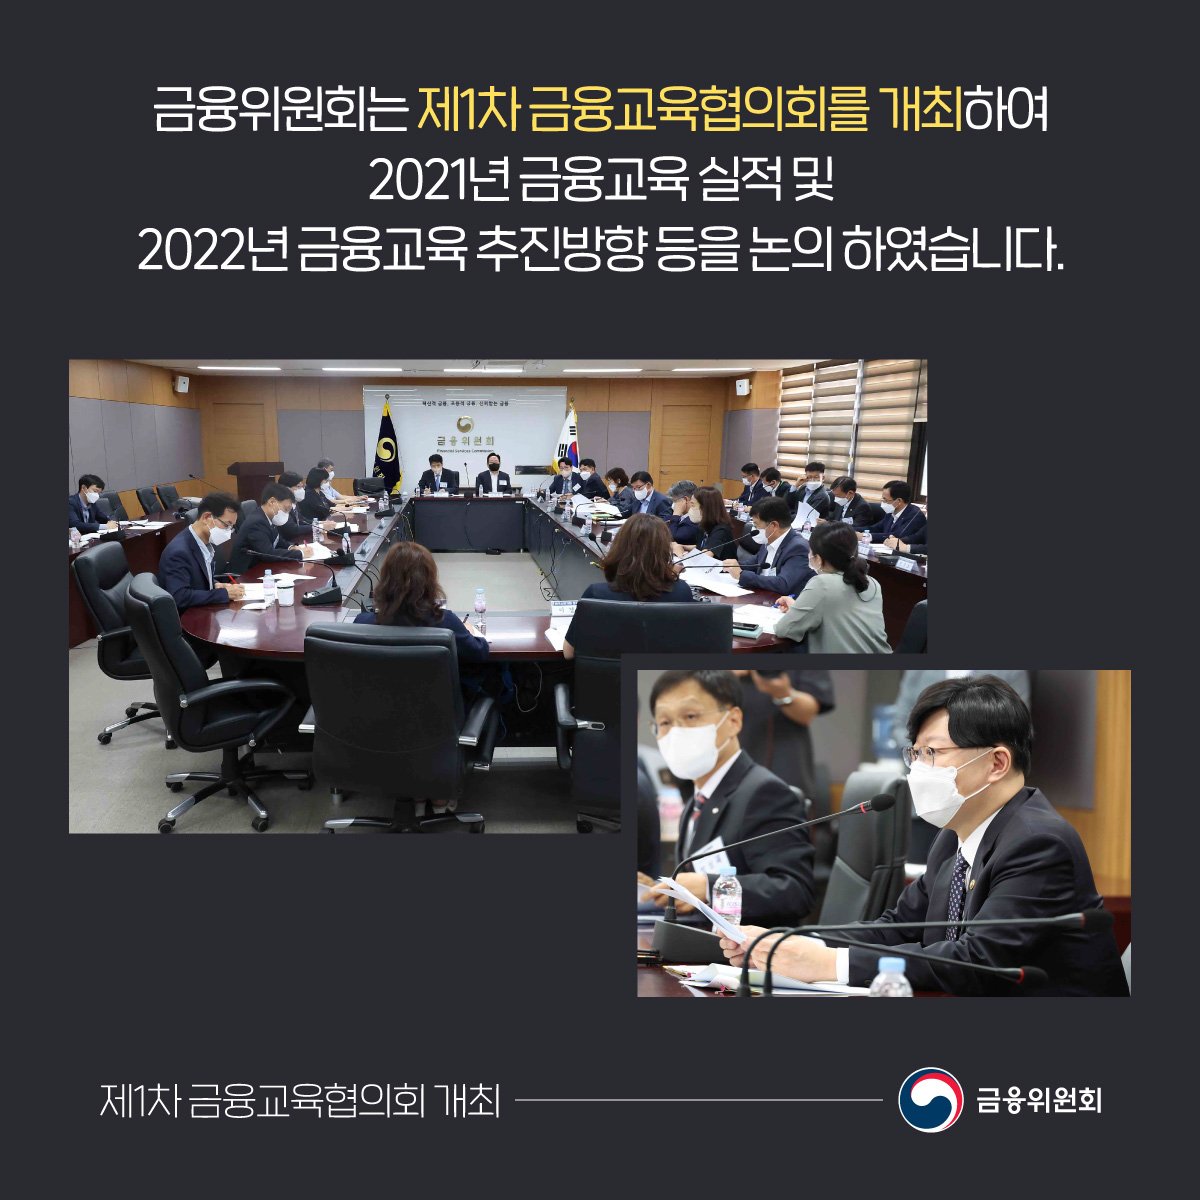 금융위원회는 제1차 금융교육협의회를 개최하여 2021년 금융교육 실적 및 2022년 금융교육 추진방향 등을 논의 하였습니다.  ​